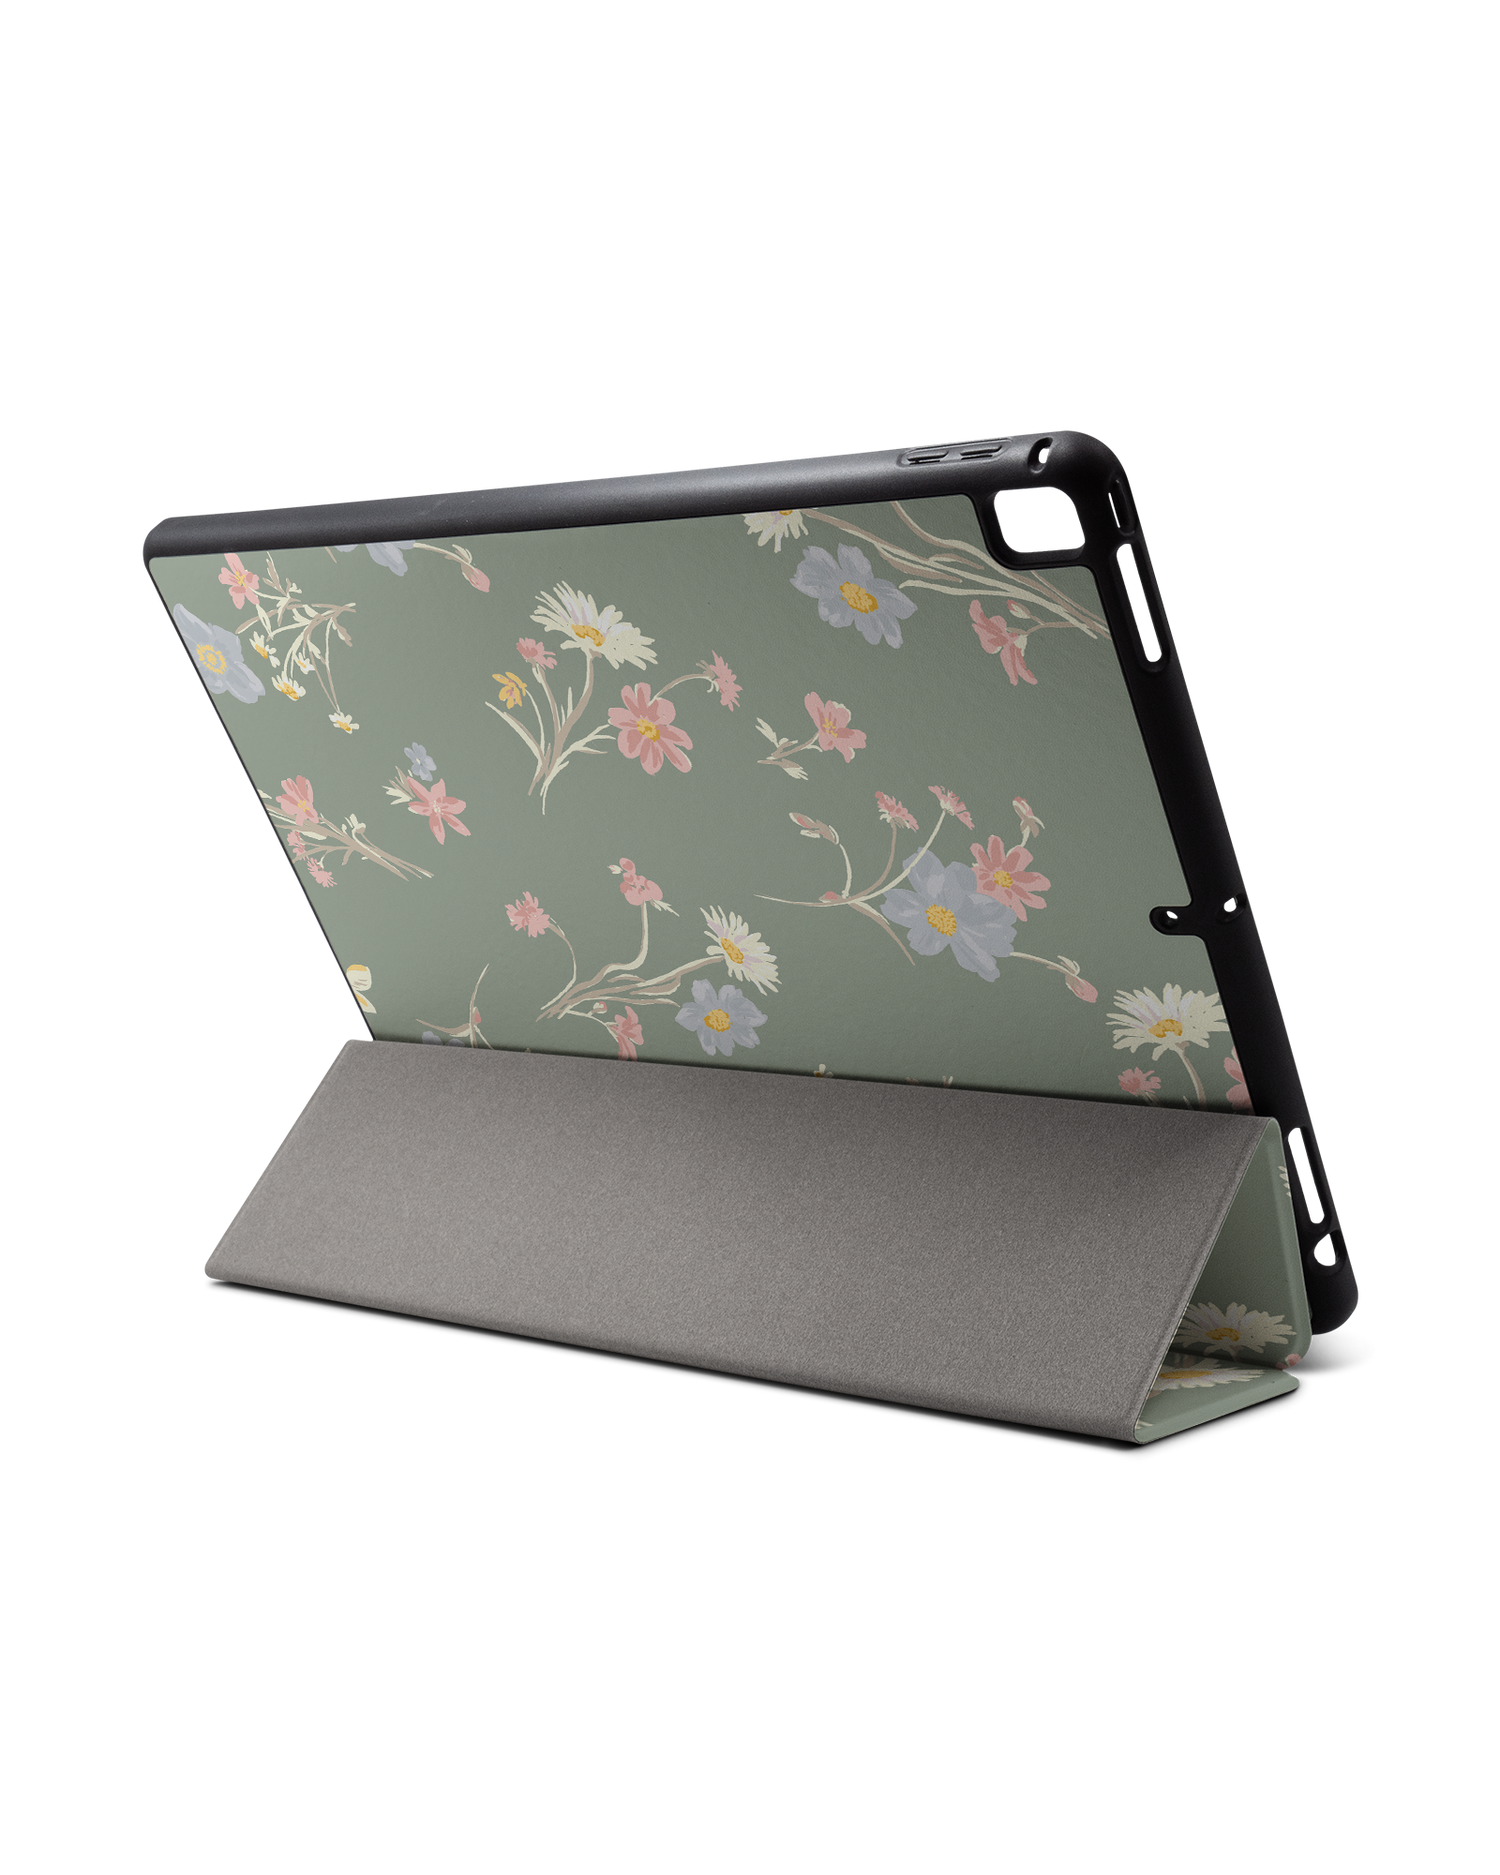 Wild Flower Sprigs iPad Hülle mit Stifthalter für Apple iPad Pro 2 12.9'' (2017): Aufgestellt im Querformat von hinten